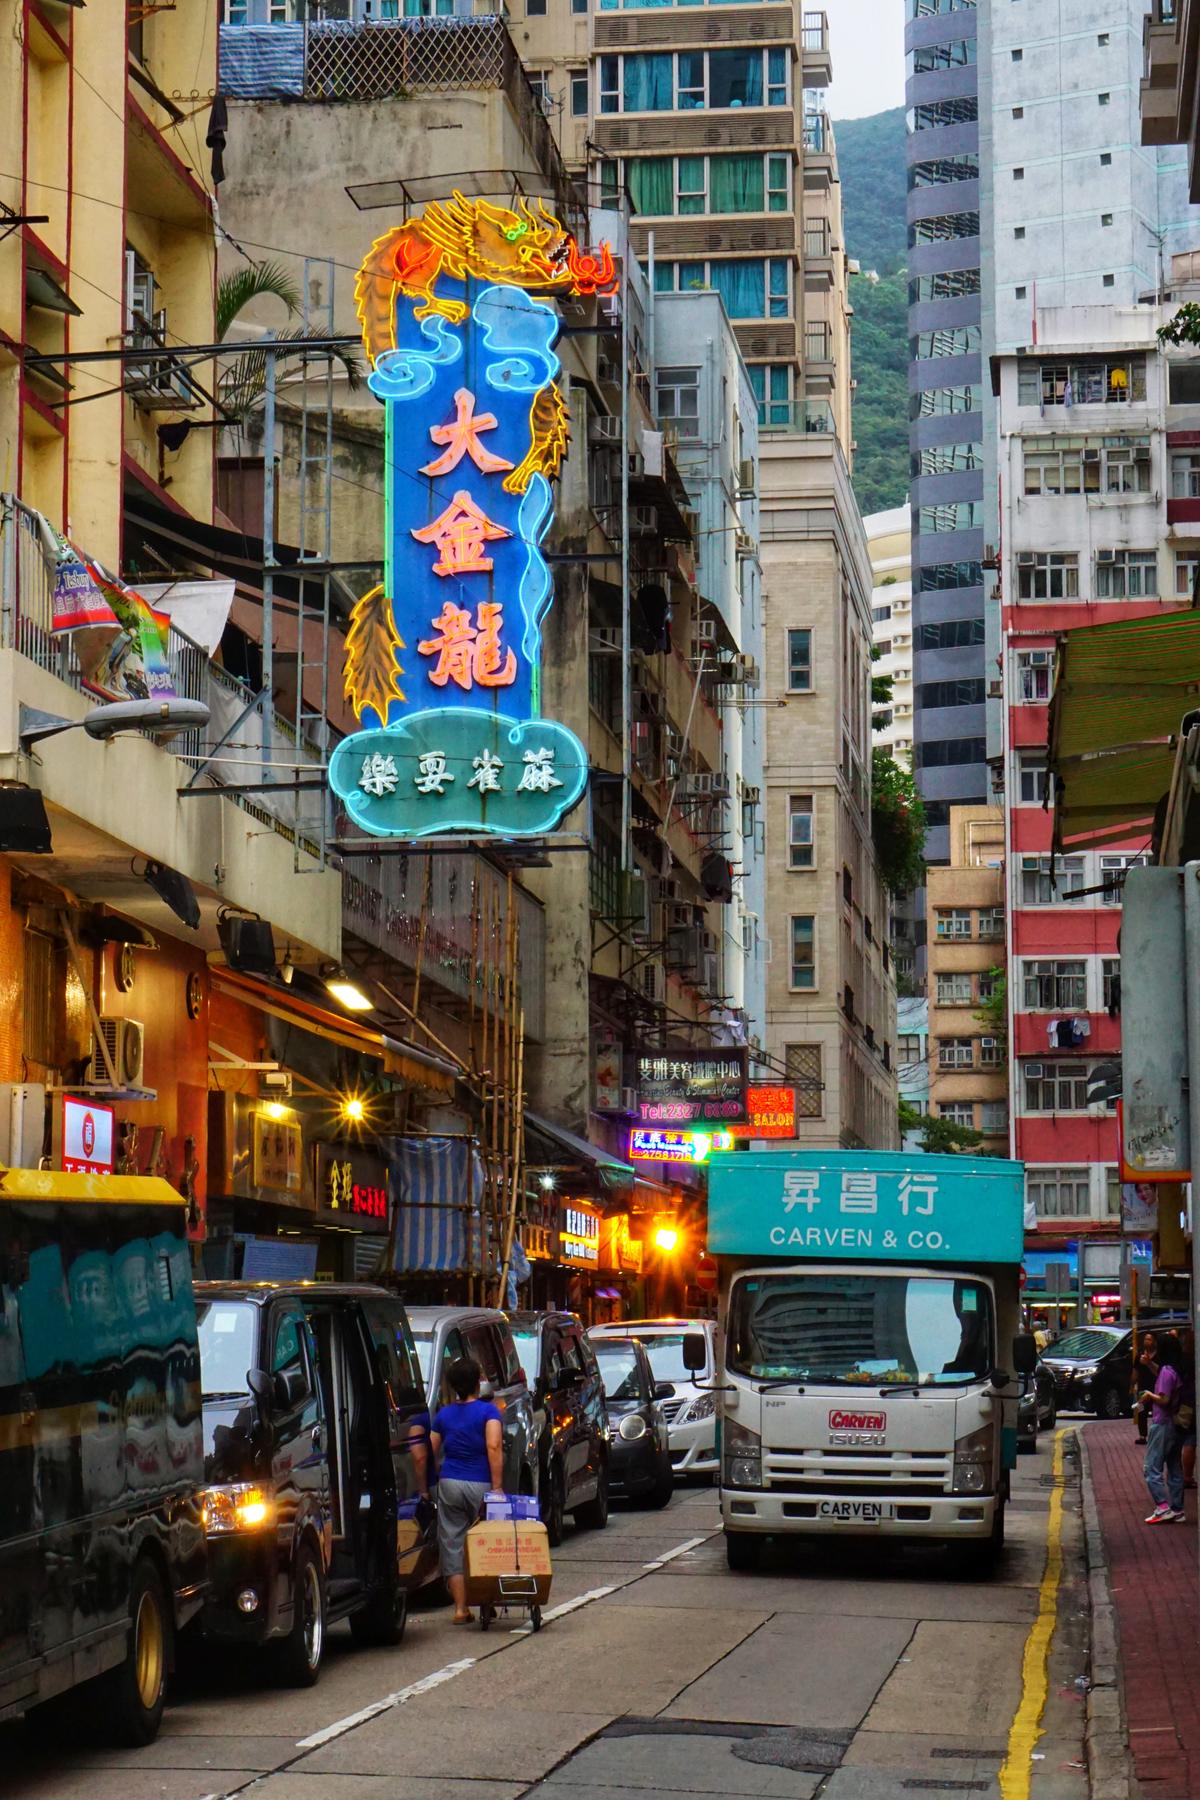 Фотография из Гонконга, сделанная Джерри Чжаном.